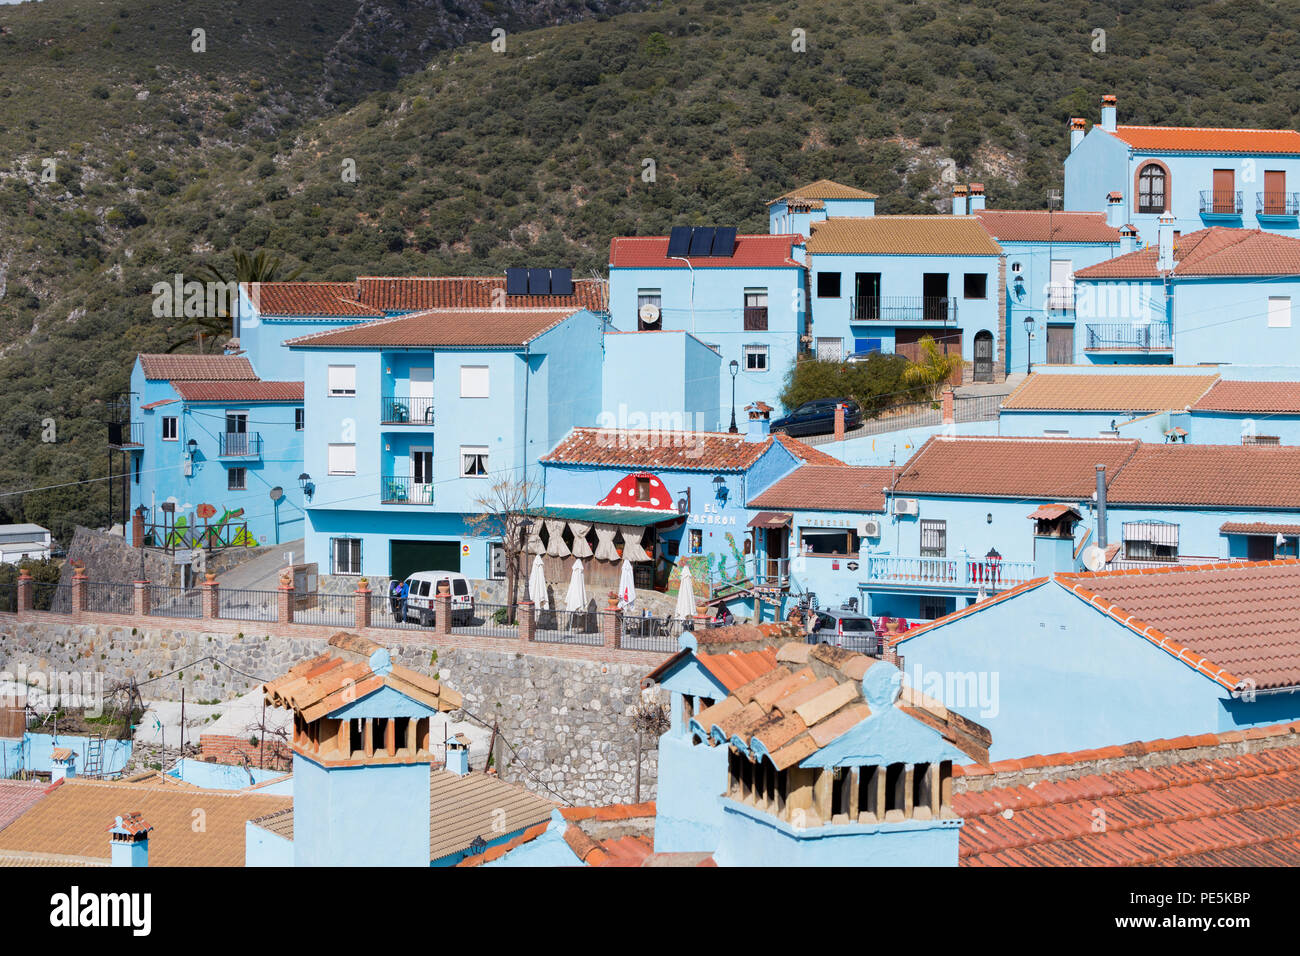 Juzcar edifici del villaggio (compresa la chiesa) sono state dipinte di puffo-blu di Sony España per celebrare la premiere del film I Puffi. Foto Stock